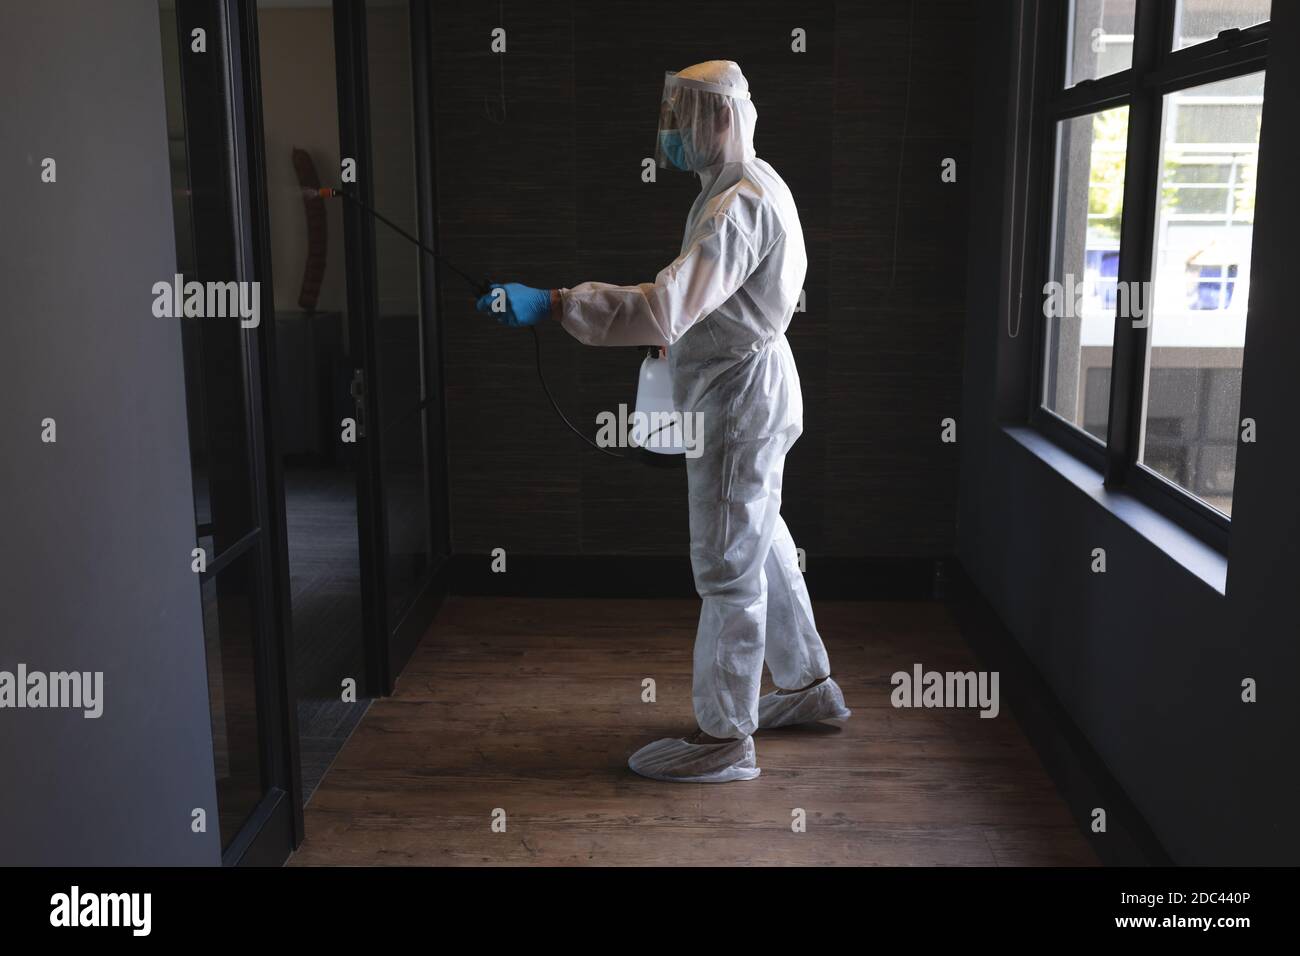 Trabajador de salud que usa ropa protectora oficina de limpieza usando desinfectante Foto de stock